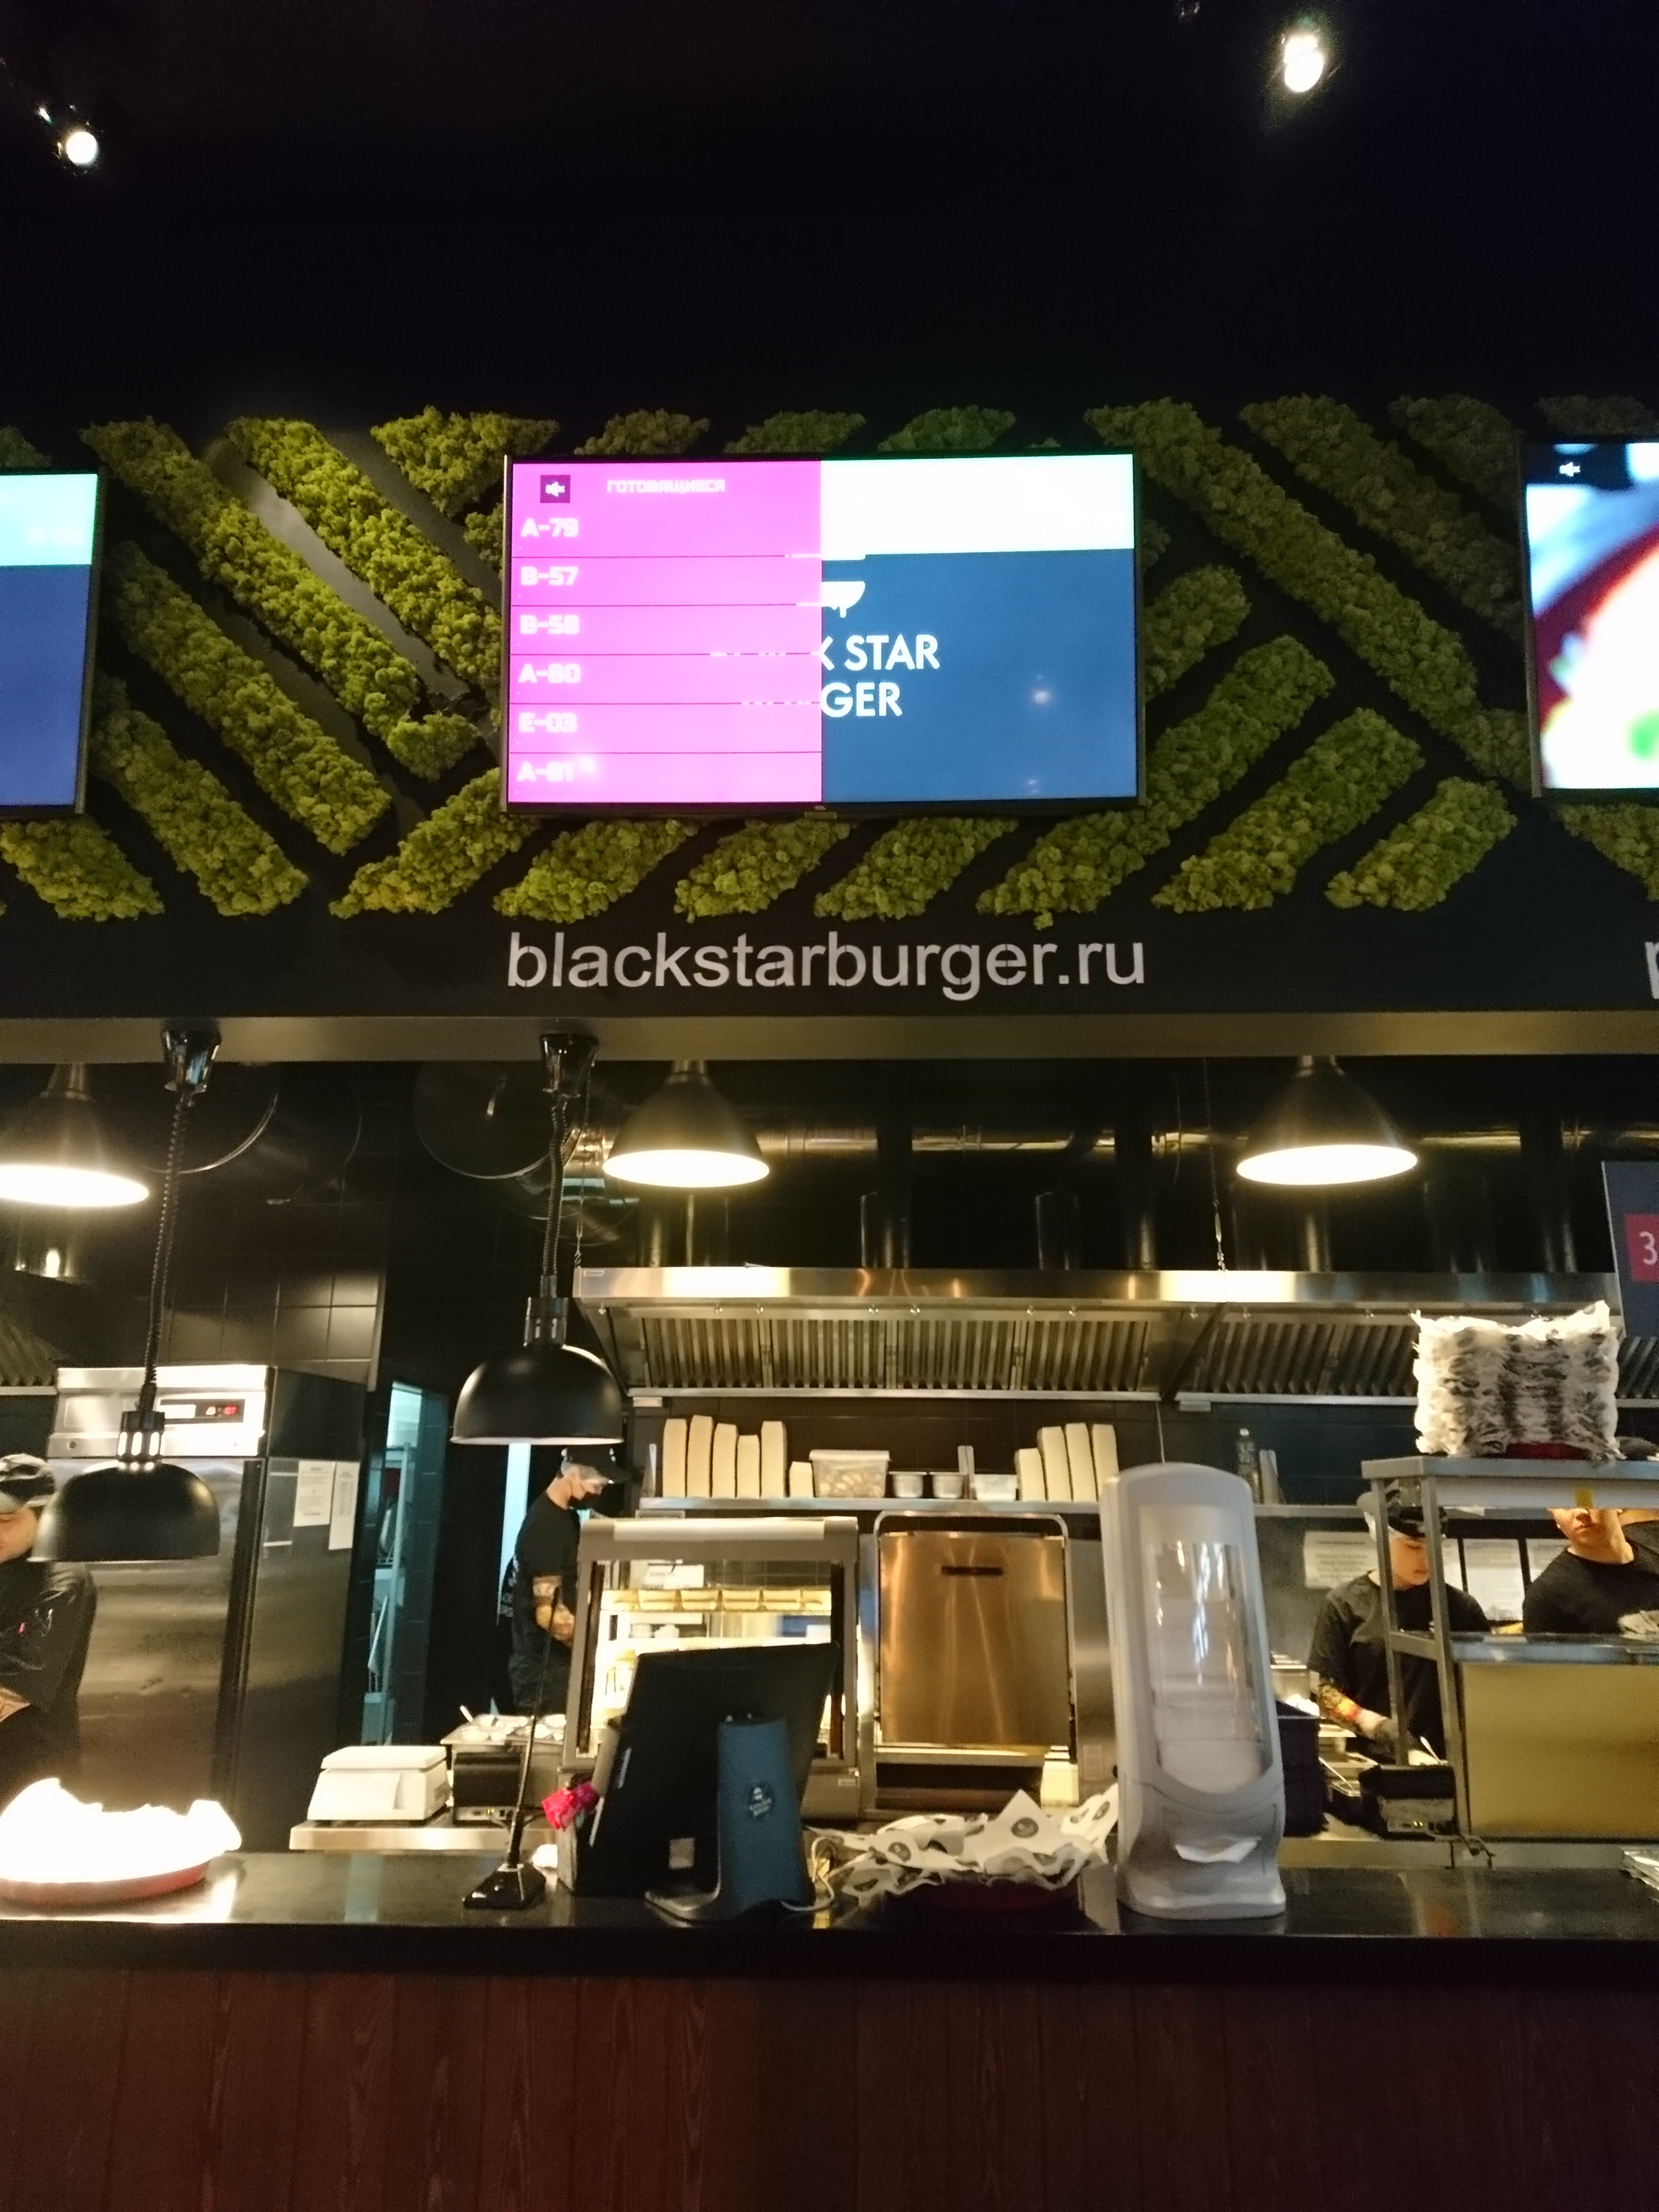 Black star burger, ресторан быстрого питания, площадь Киевского вокзала, 2, 3 этаж